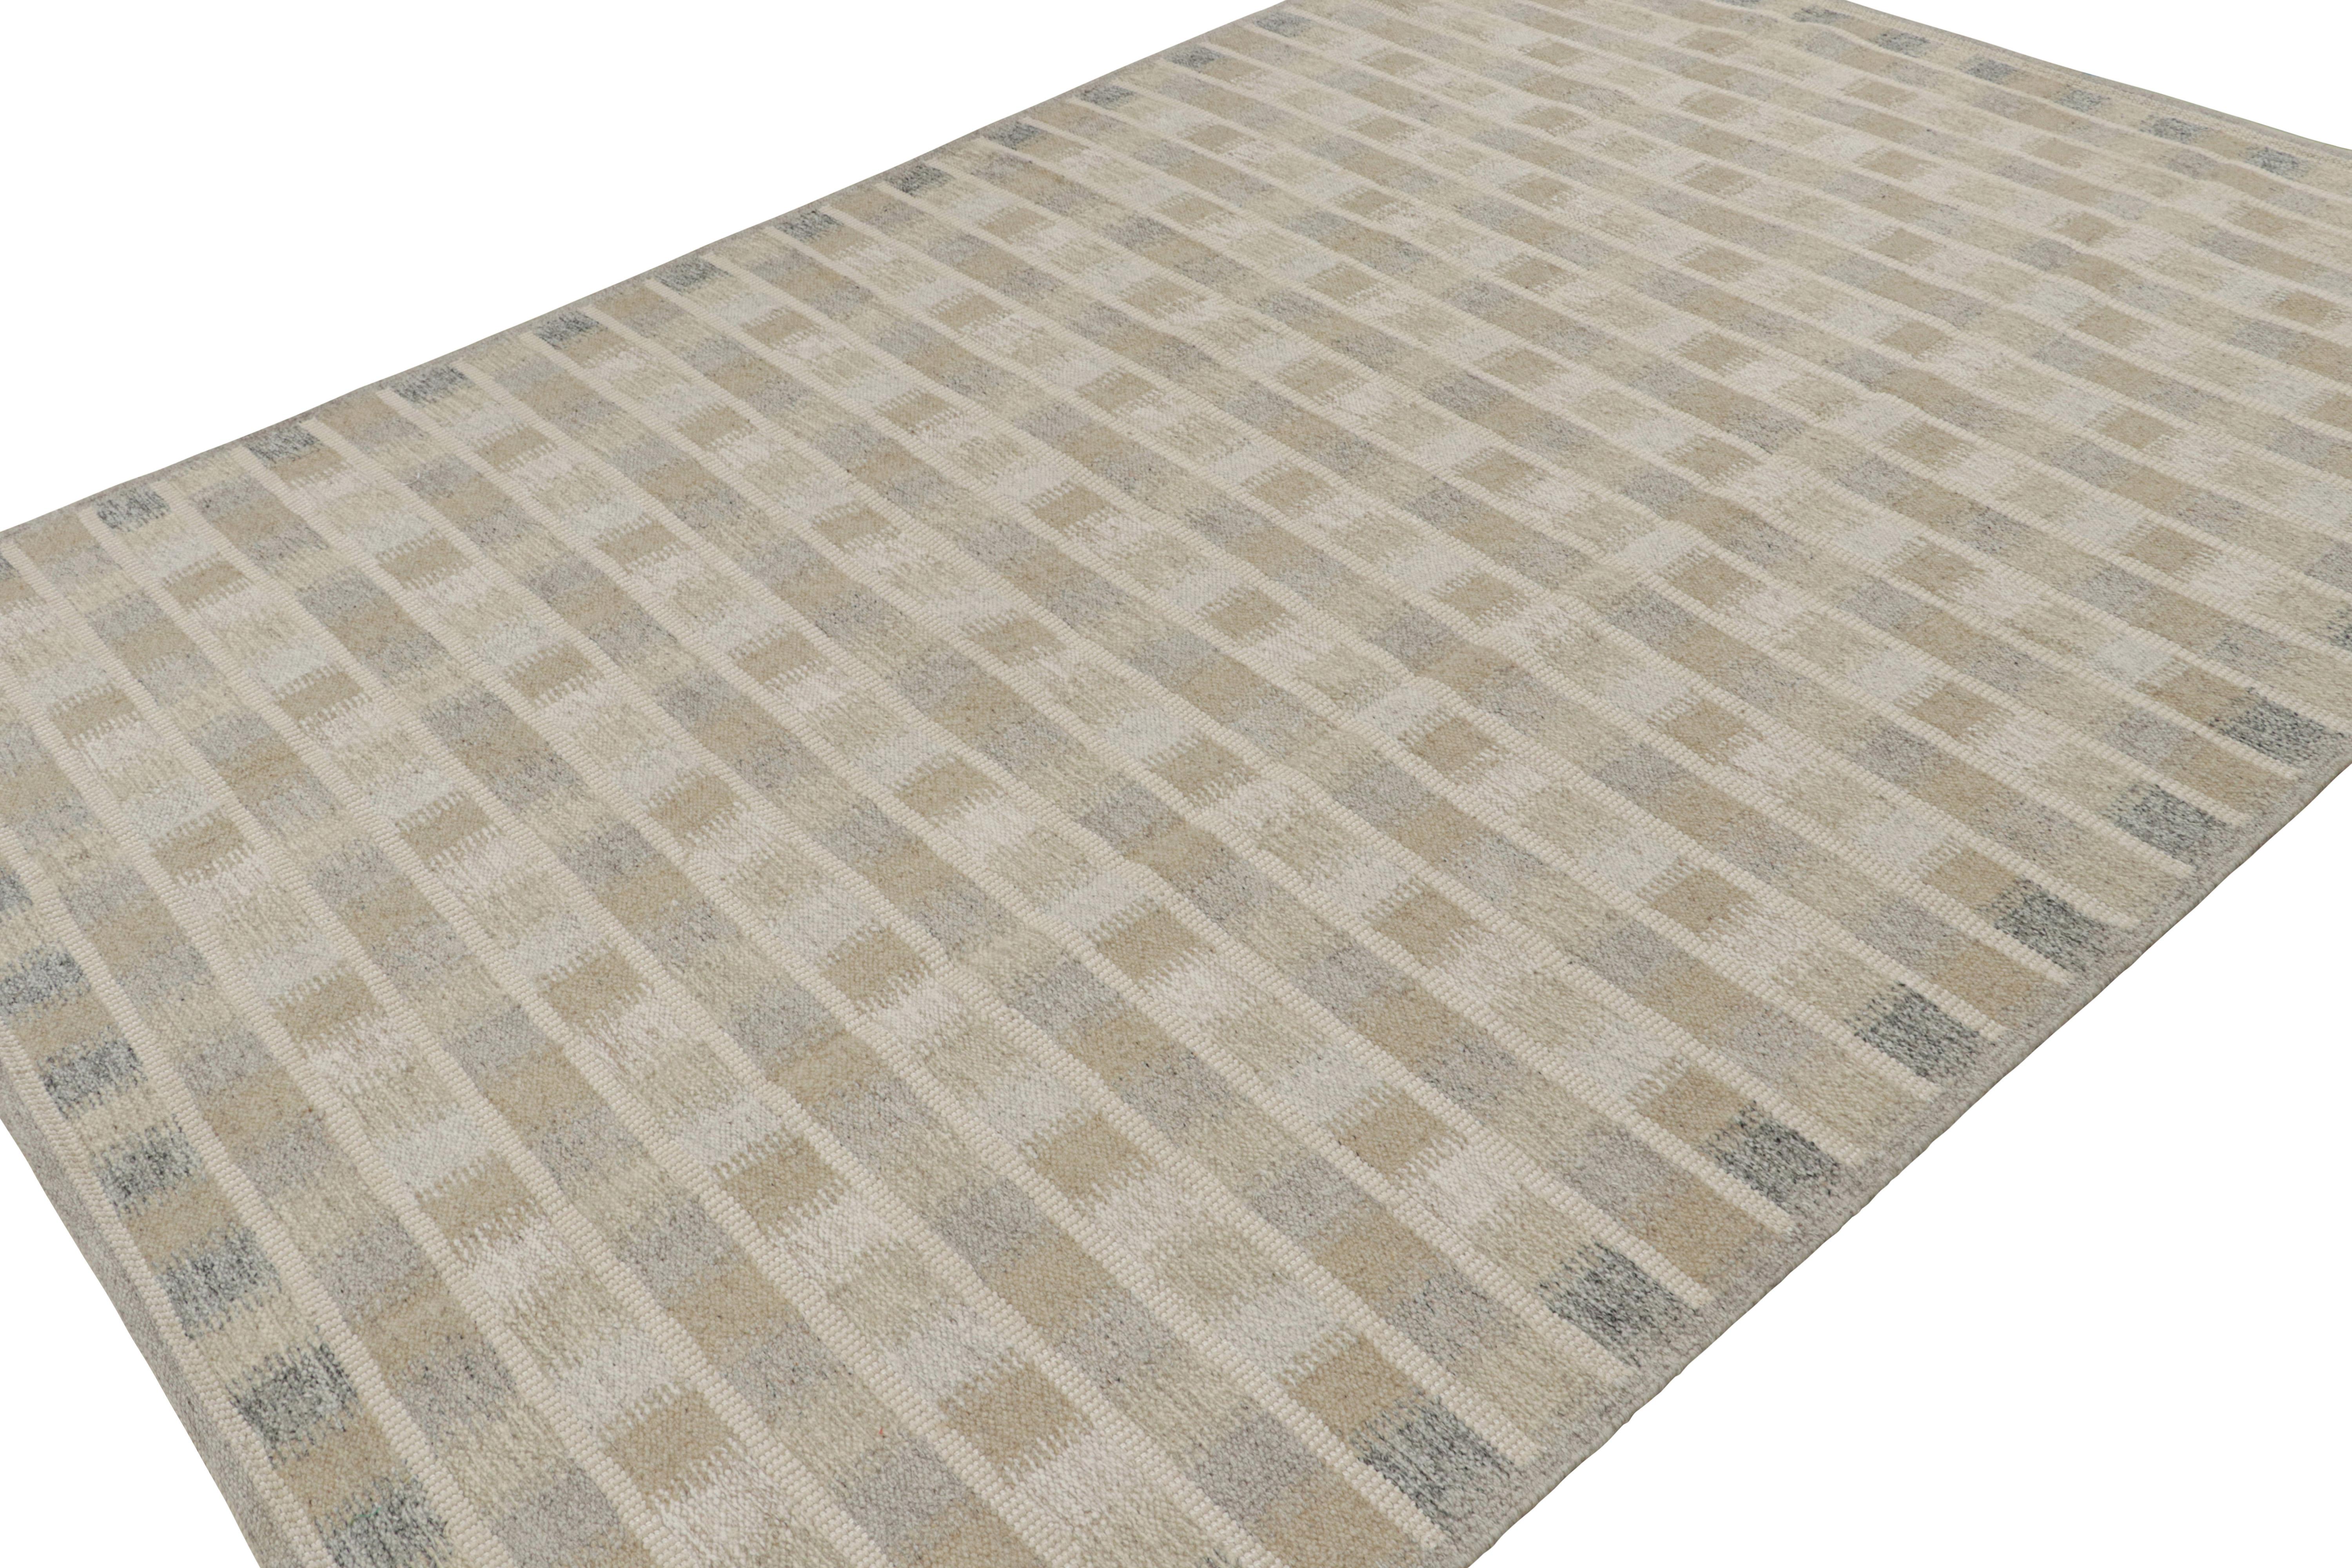 Dieser schwedische Kilim-Teppich im Format 9x12 gehört zu den Flachgeweben der skandinavischen Teppichkollektion von Rug & Kilim. Das Design des handgewebten Teppichs aus Wolle, Baumwolle und natürlichen Garnen ist von den Teppichen Rollakhan und